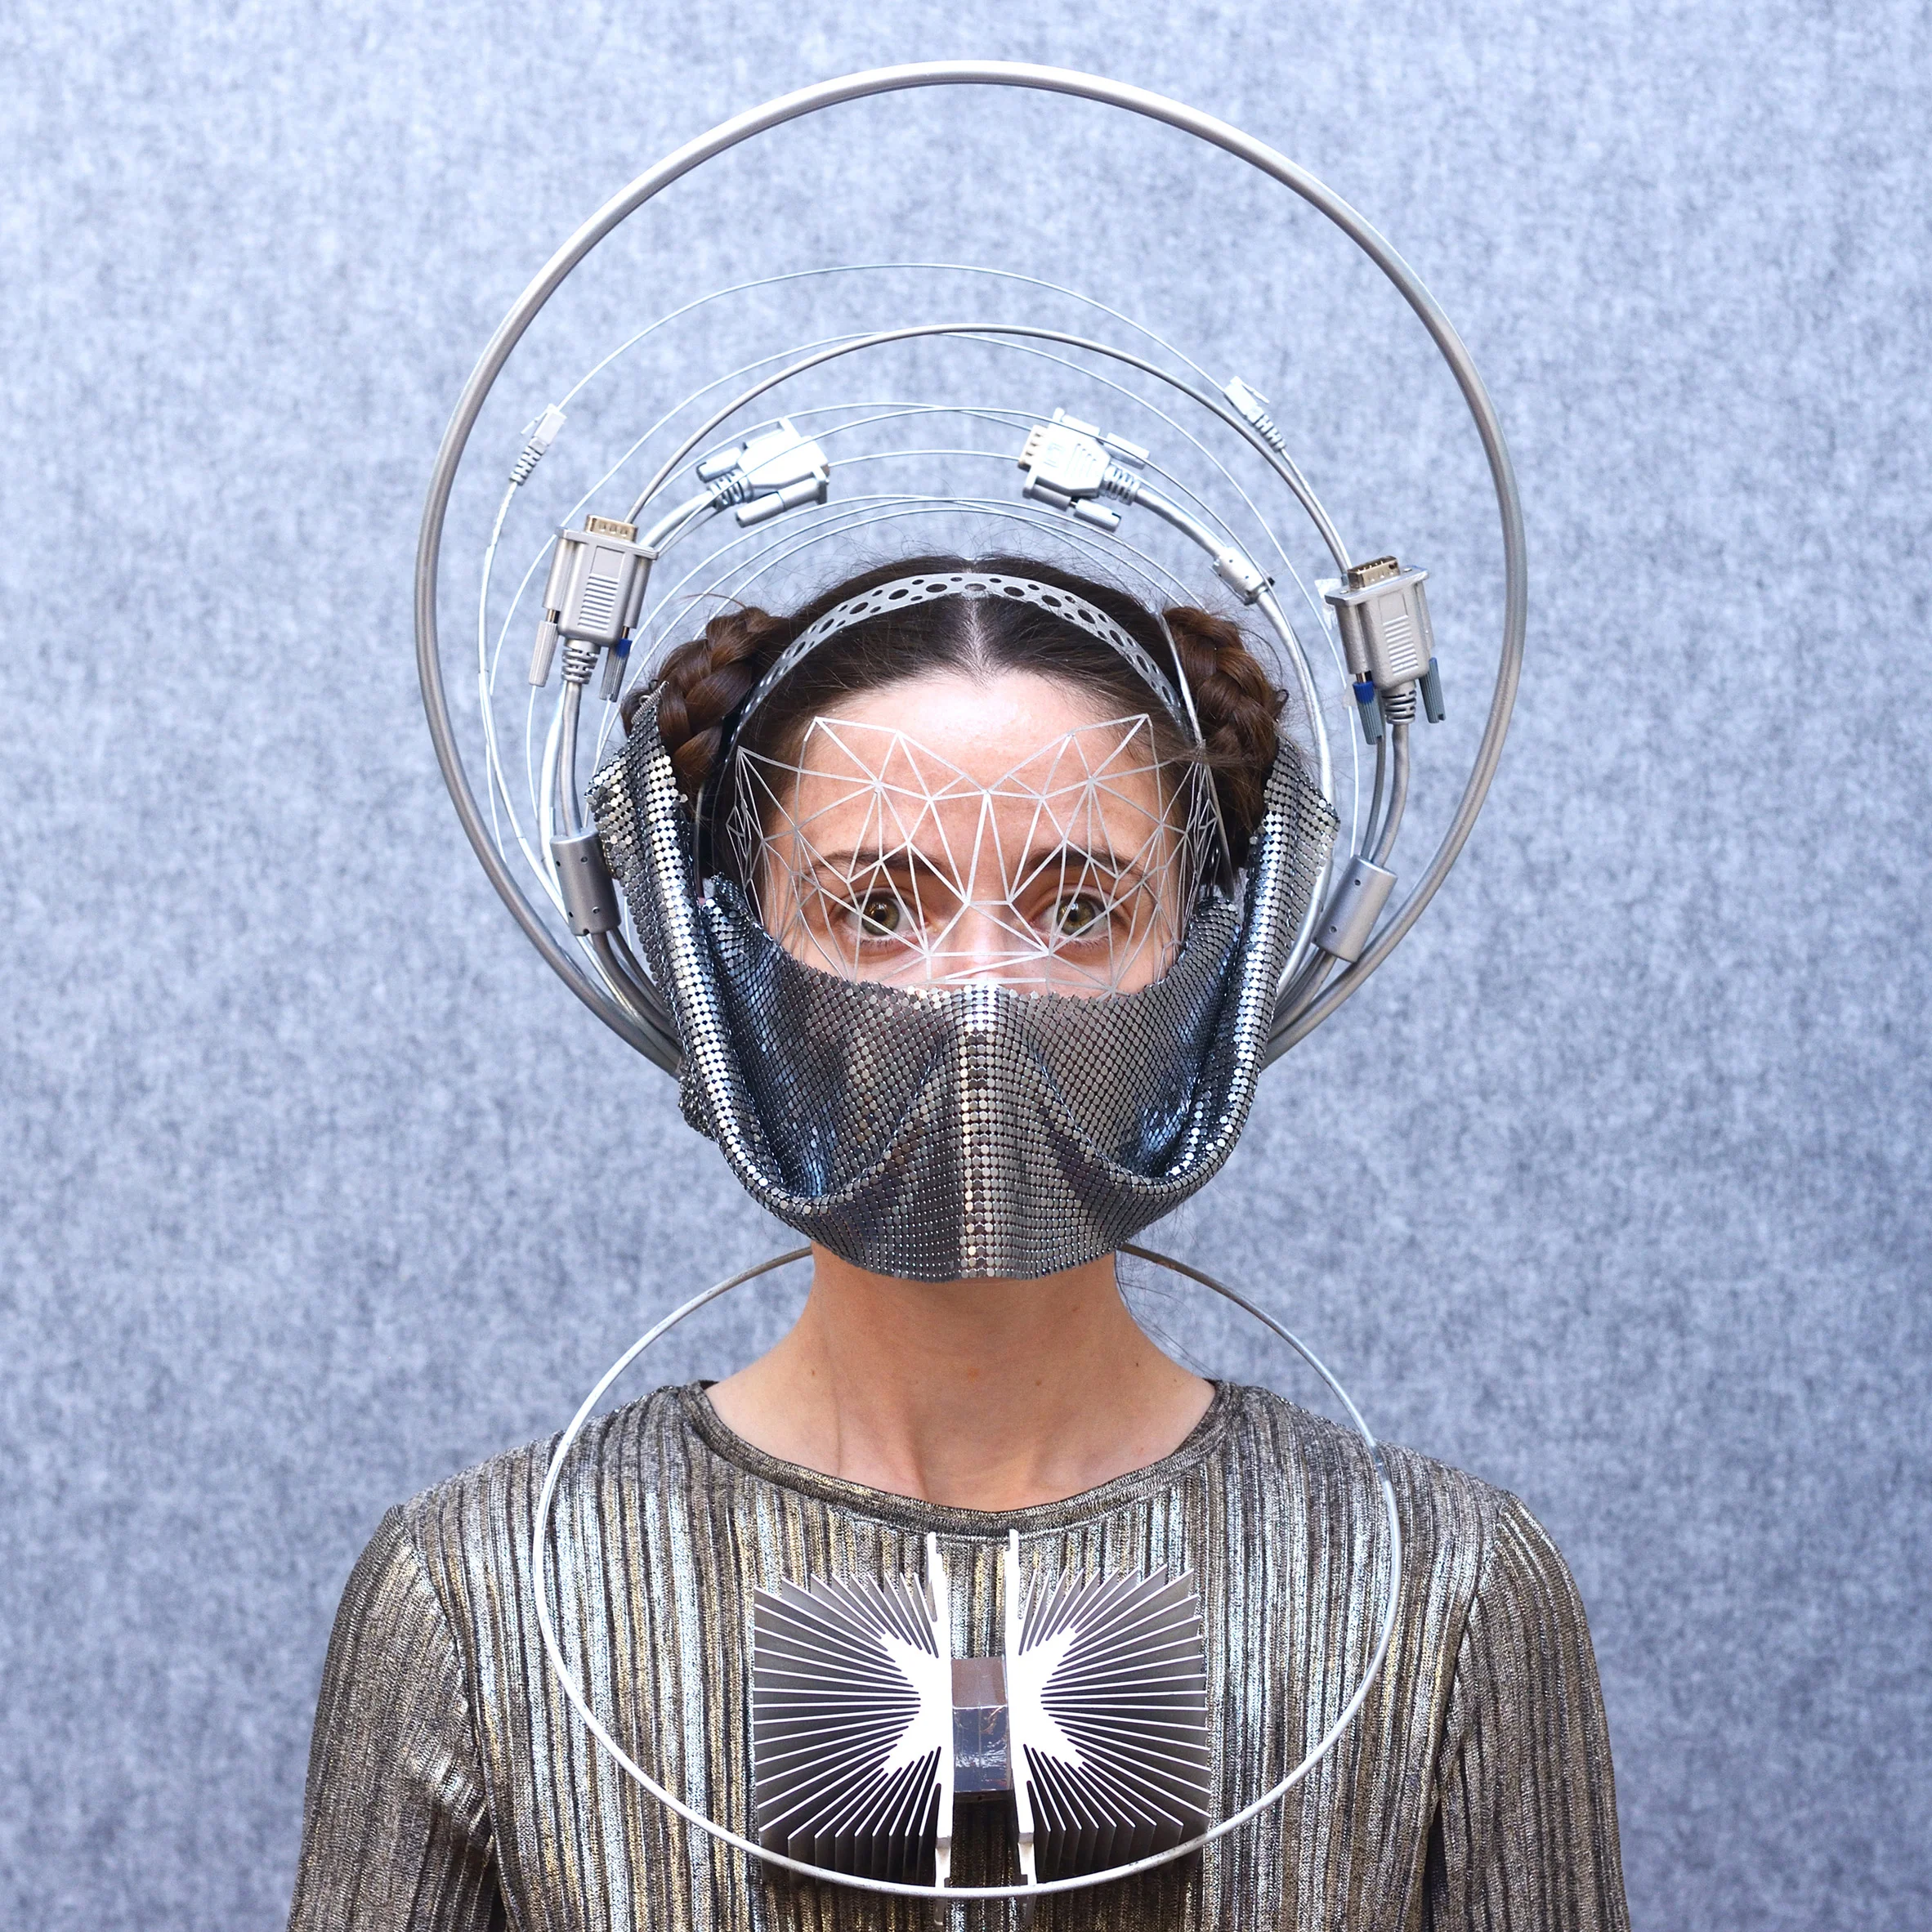 Дизайнер создает невероятные маски из кабелей и банок из-под йогурта, и они просто чудо - фото 479984